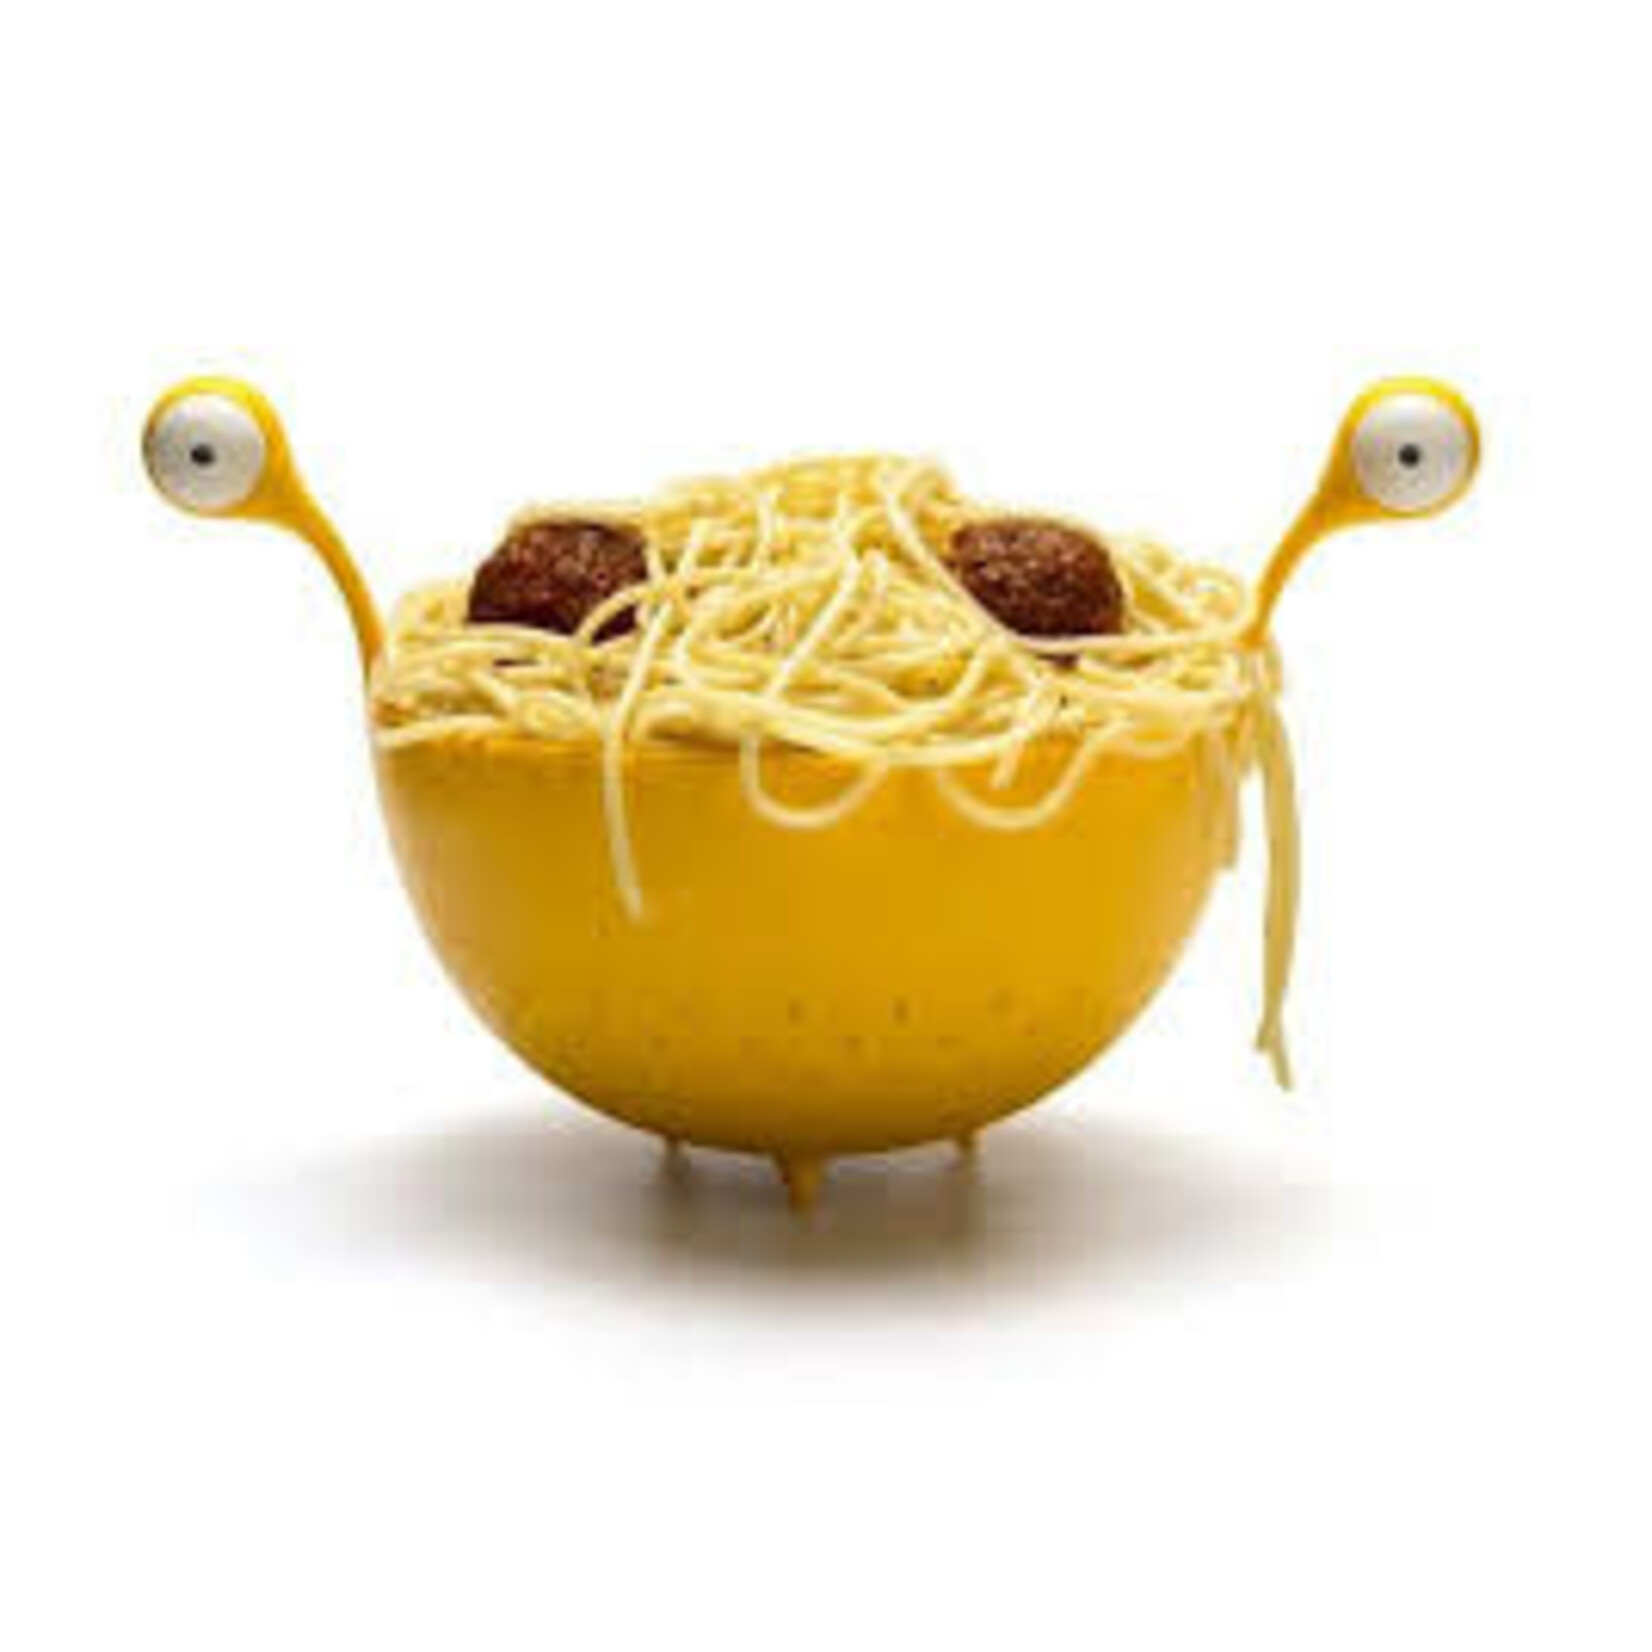 Diverse Merken Ototo Spaghetti Monster vergiet Ototo ot872